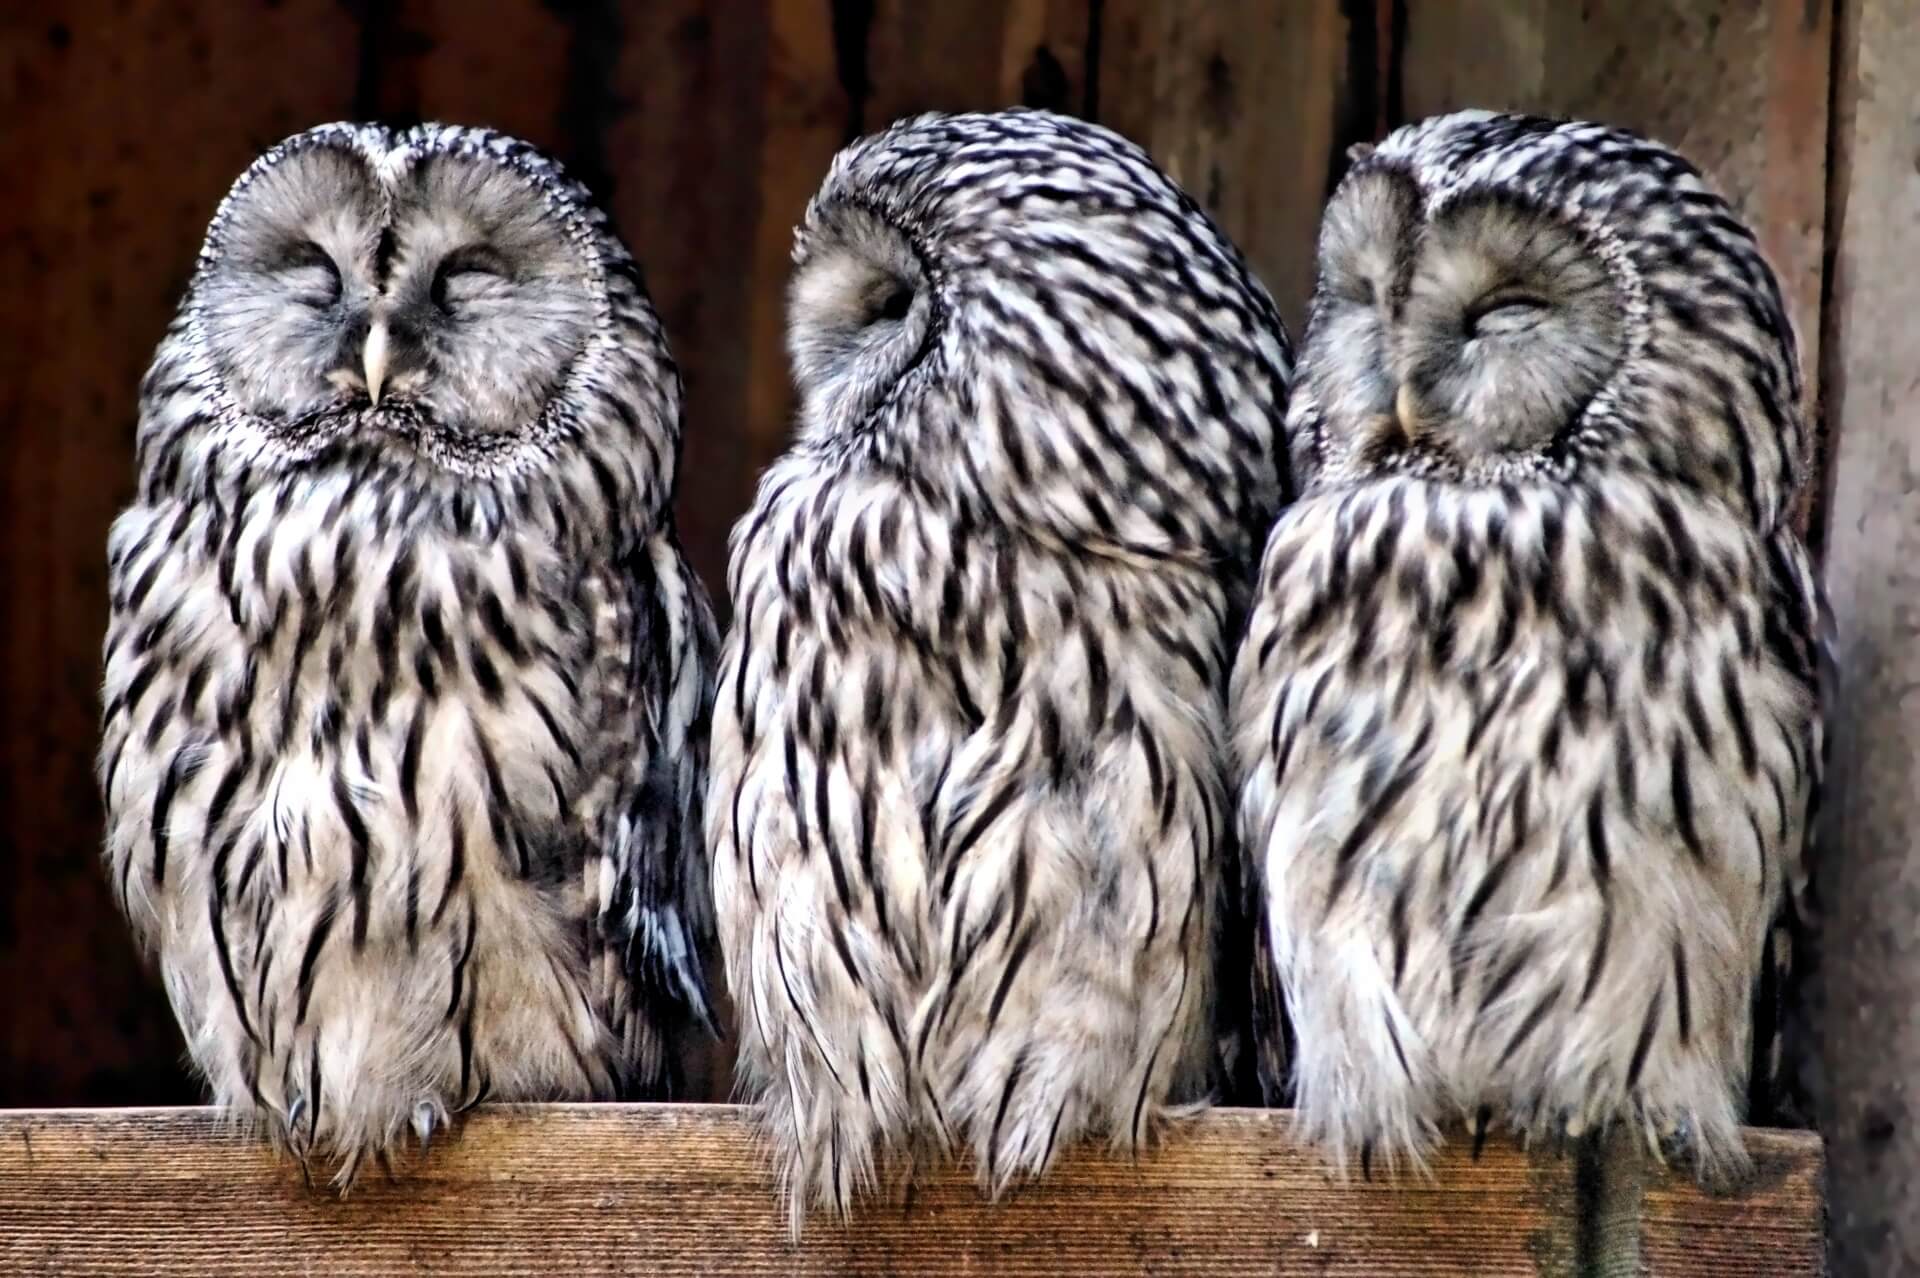 OWLs